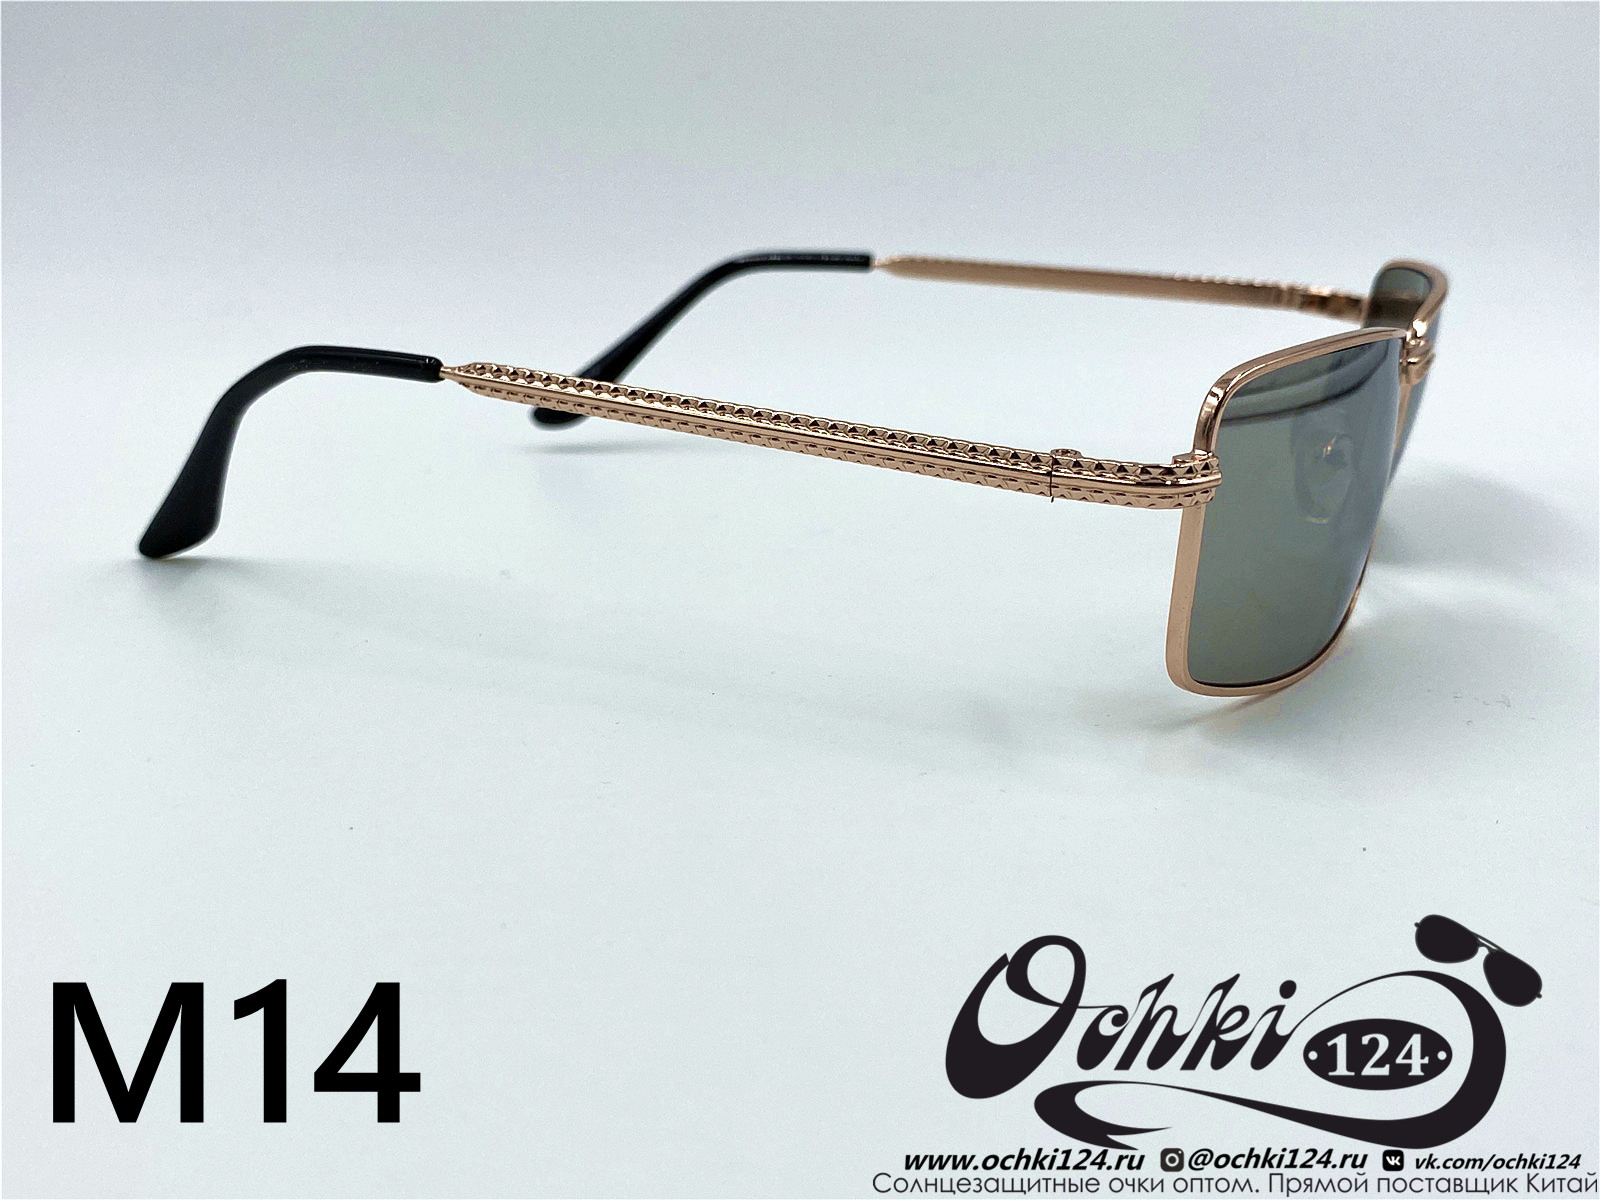  Солнцезащитные очки картинка 2022 Мужские Узкие и длинные KaiFeng M14-6 